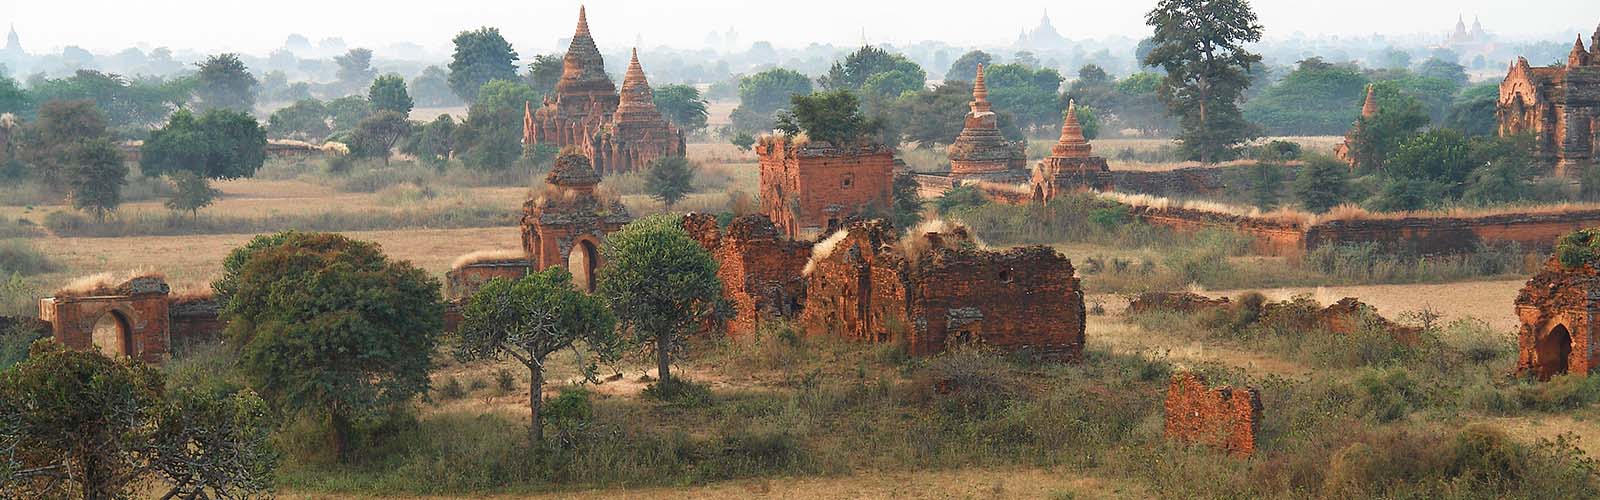 Voyage Birmanie - Voyage sur mesure en Birmanie avec une agence locale